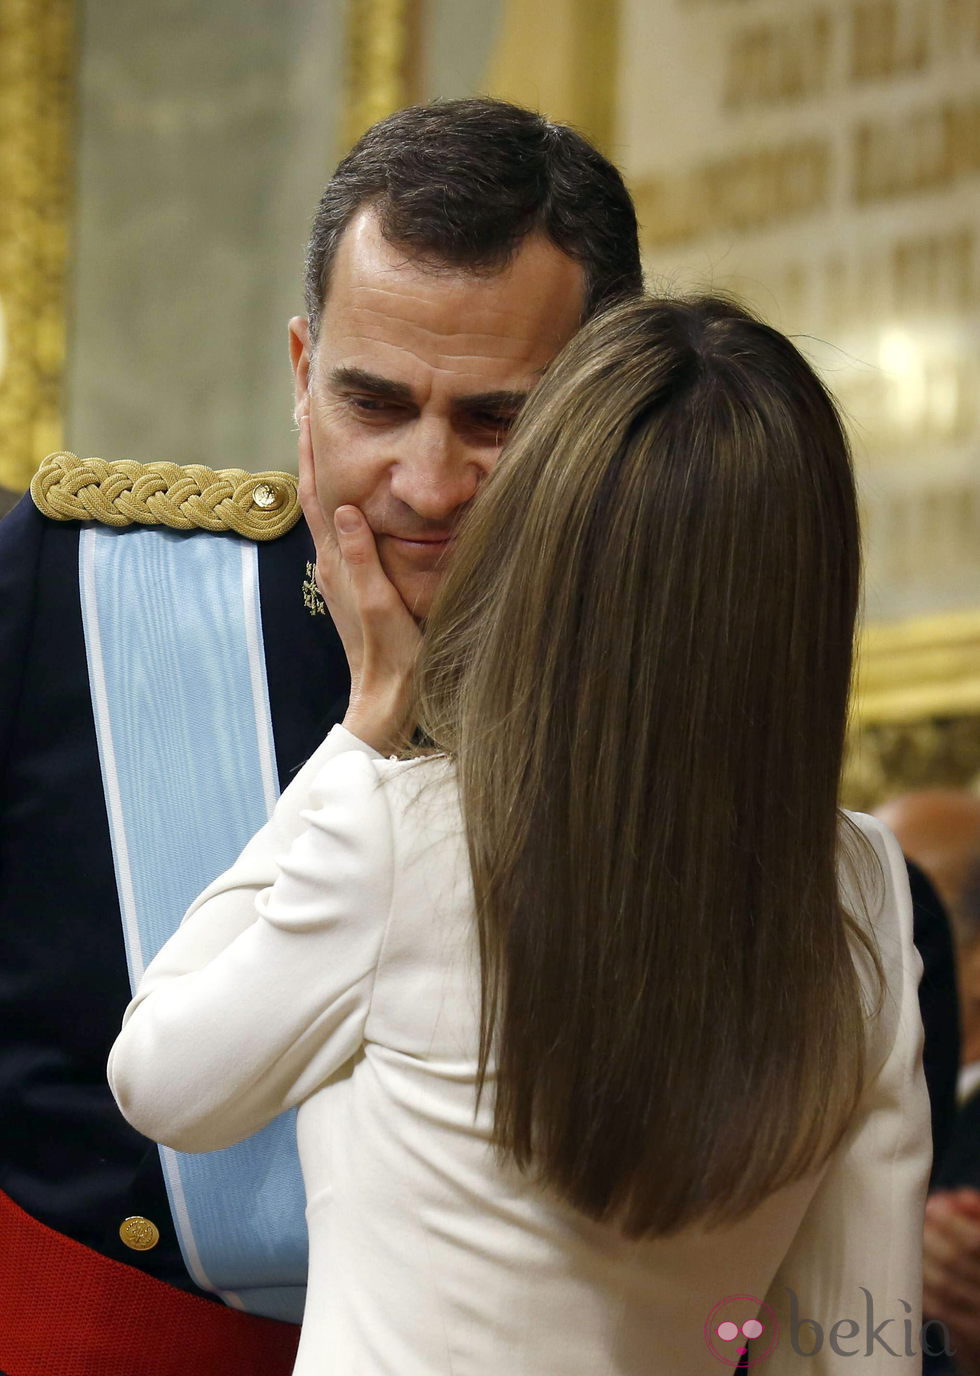 La Reina Letizia besa el Rey Felipe VI tras su primer discurso como Rey de España